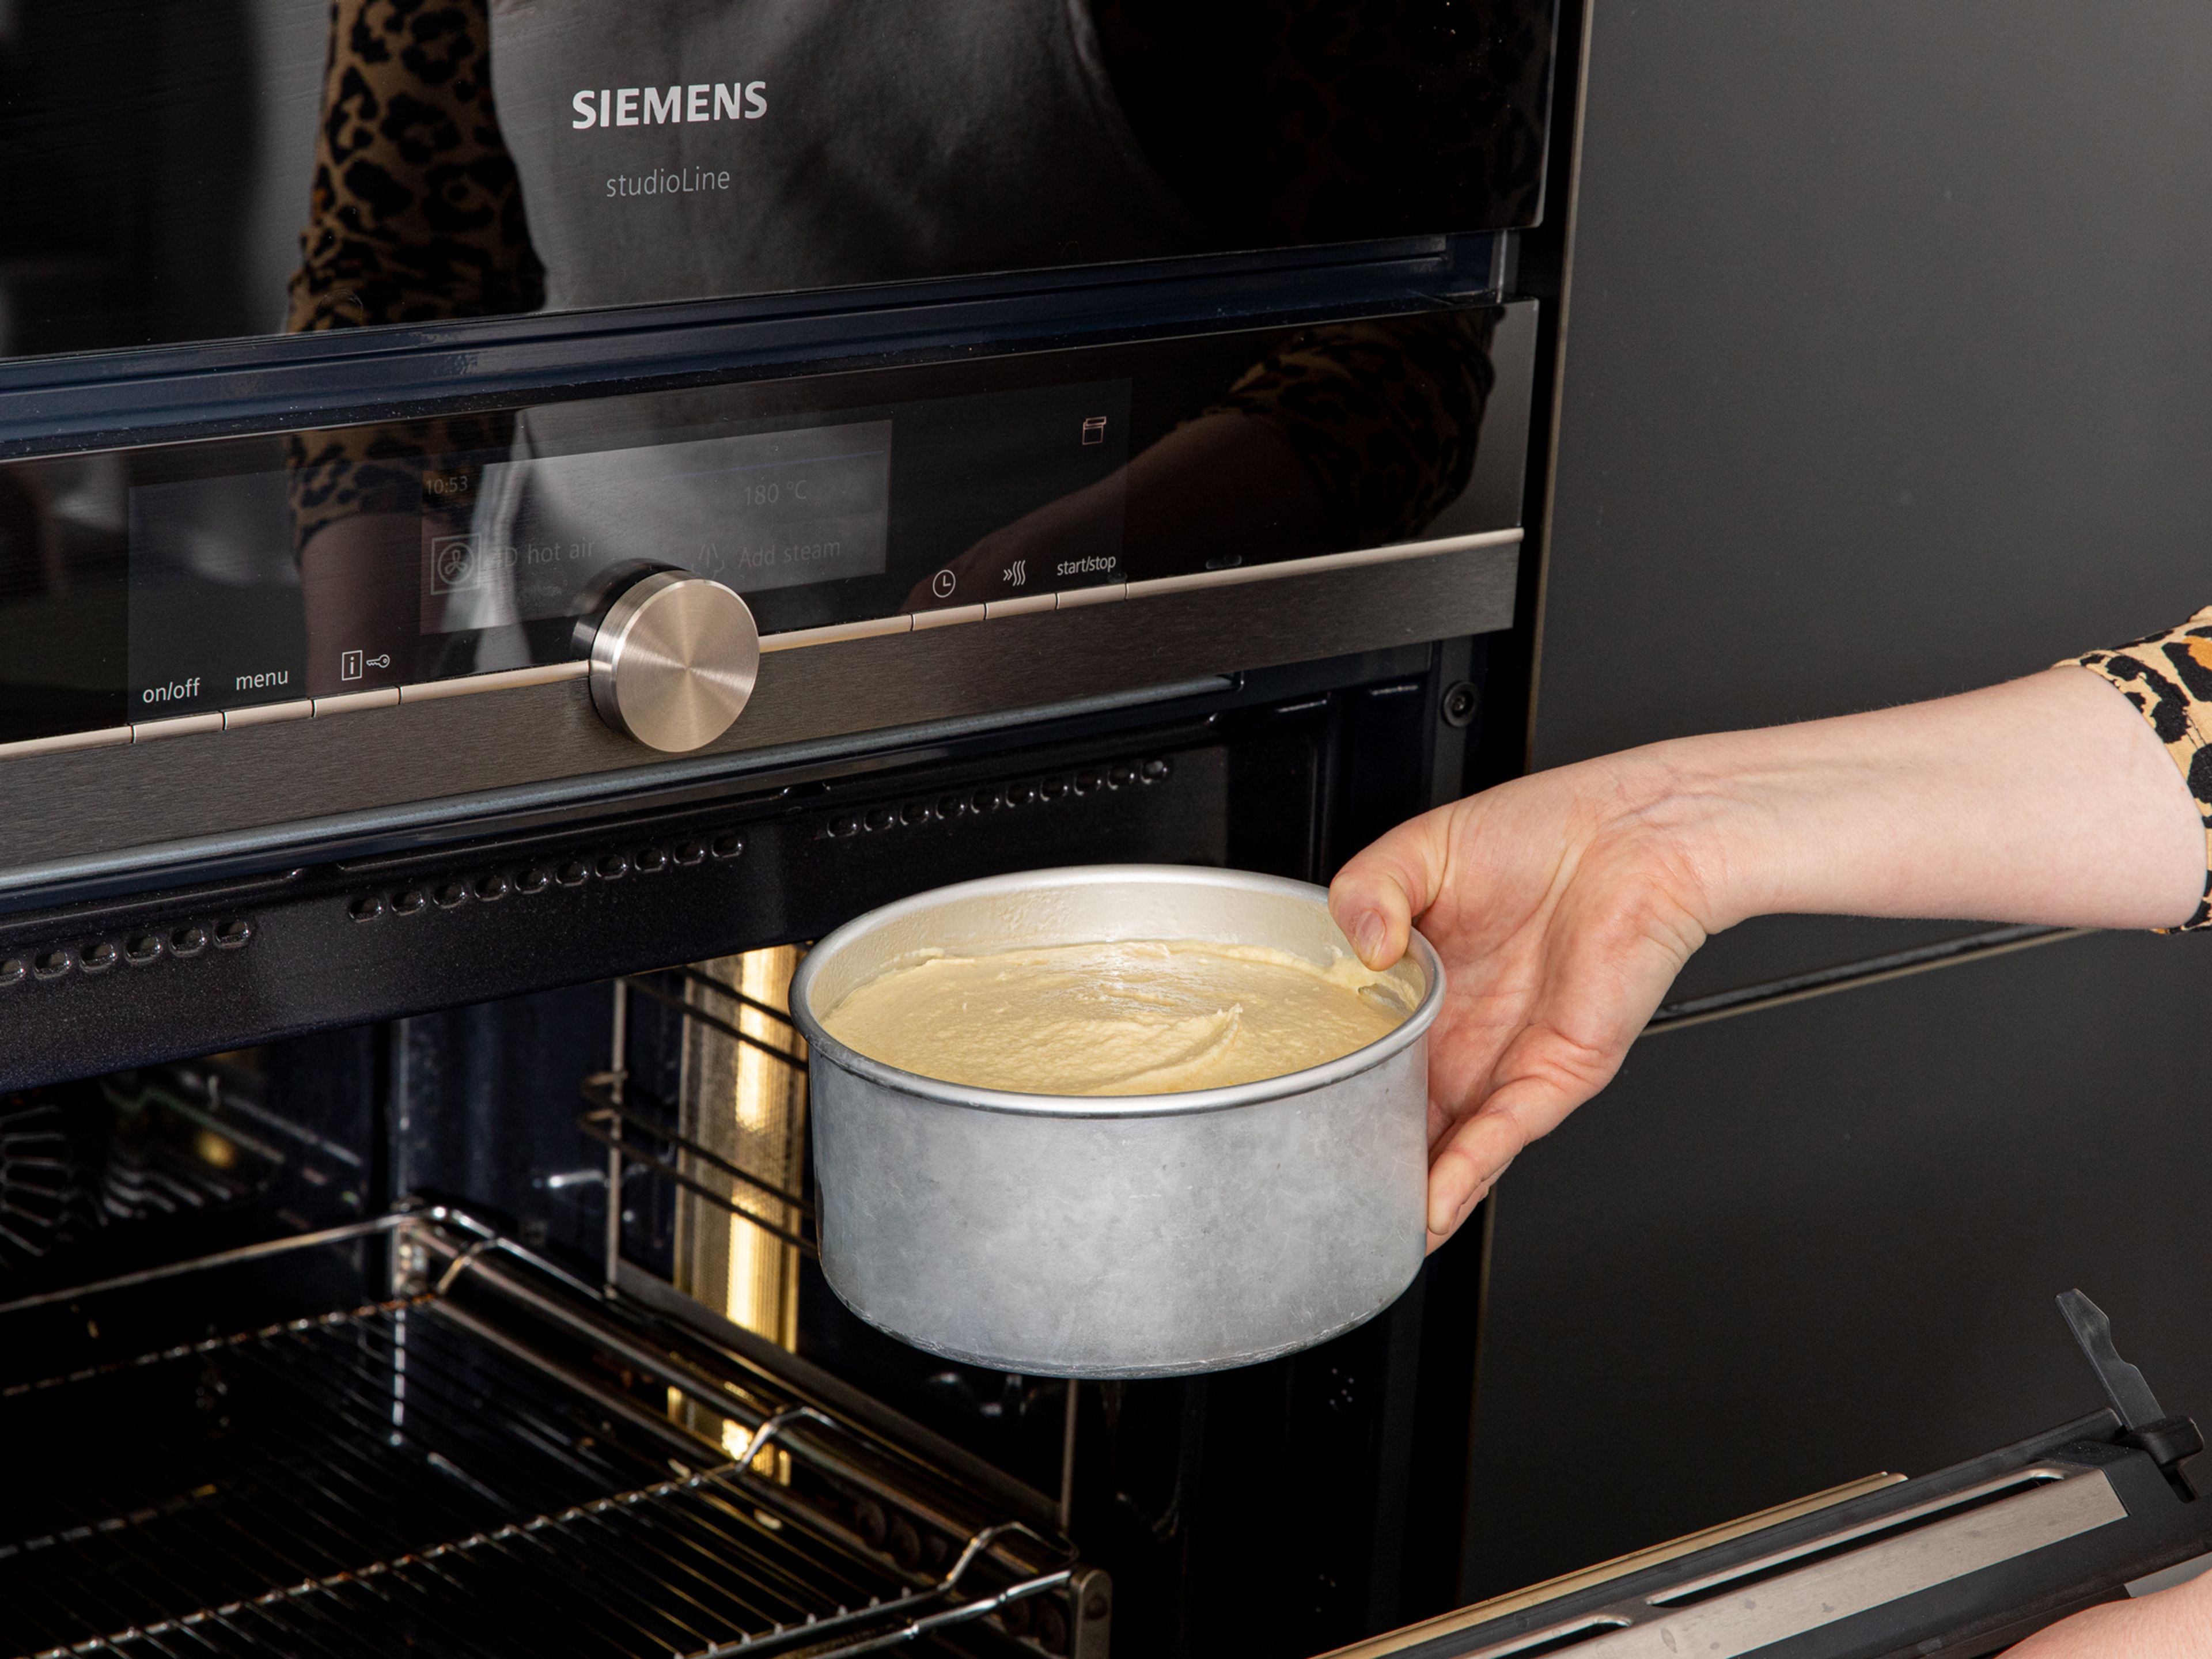 Den Ofen auf 180°C vorheizen. Die Schüssel mit den trockenen Zutaten in der Küchenmaschine einrasten. Den Flachrührer einsetzen. Bei langsamer Geschwindigkeit die Butter in kleinen Stückchen dazugeben, bis sie eine sandartige Konsistenz bildet. Dann die flüssigen Zutaten in drei Schritten dazu geben, bis sich alles gut verbunden hat. Die Masse in die Springform füllen und glatt streichen. Im vorgeheizten Ofen für ca. 50 – 60 Min. backen. Wenn möglich, einen Tag vorher backen, damit dann mit einem komplett abgekühlten Boden gearbeitet werden kann.